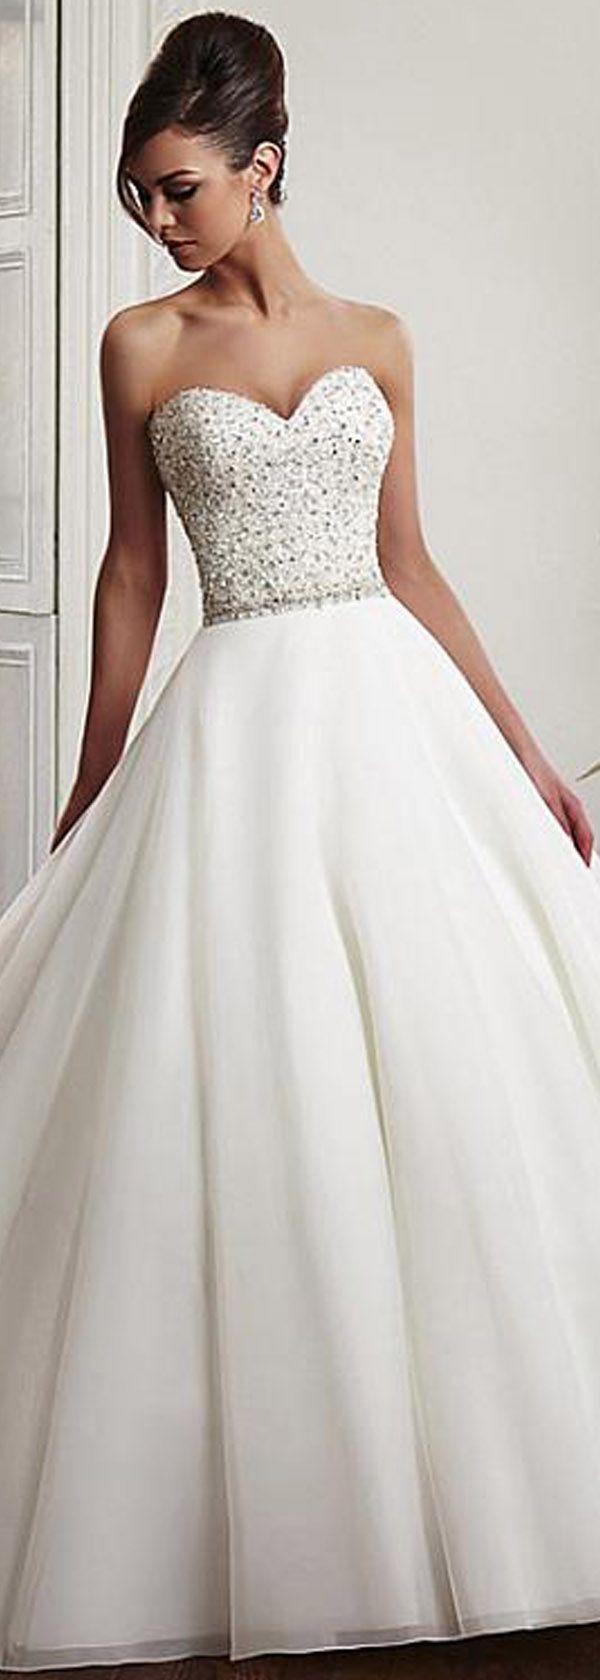 زفاف - The Dress